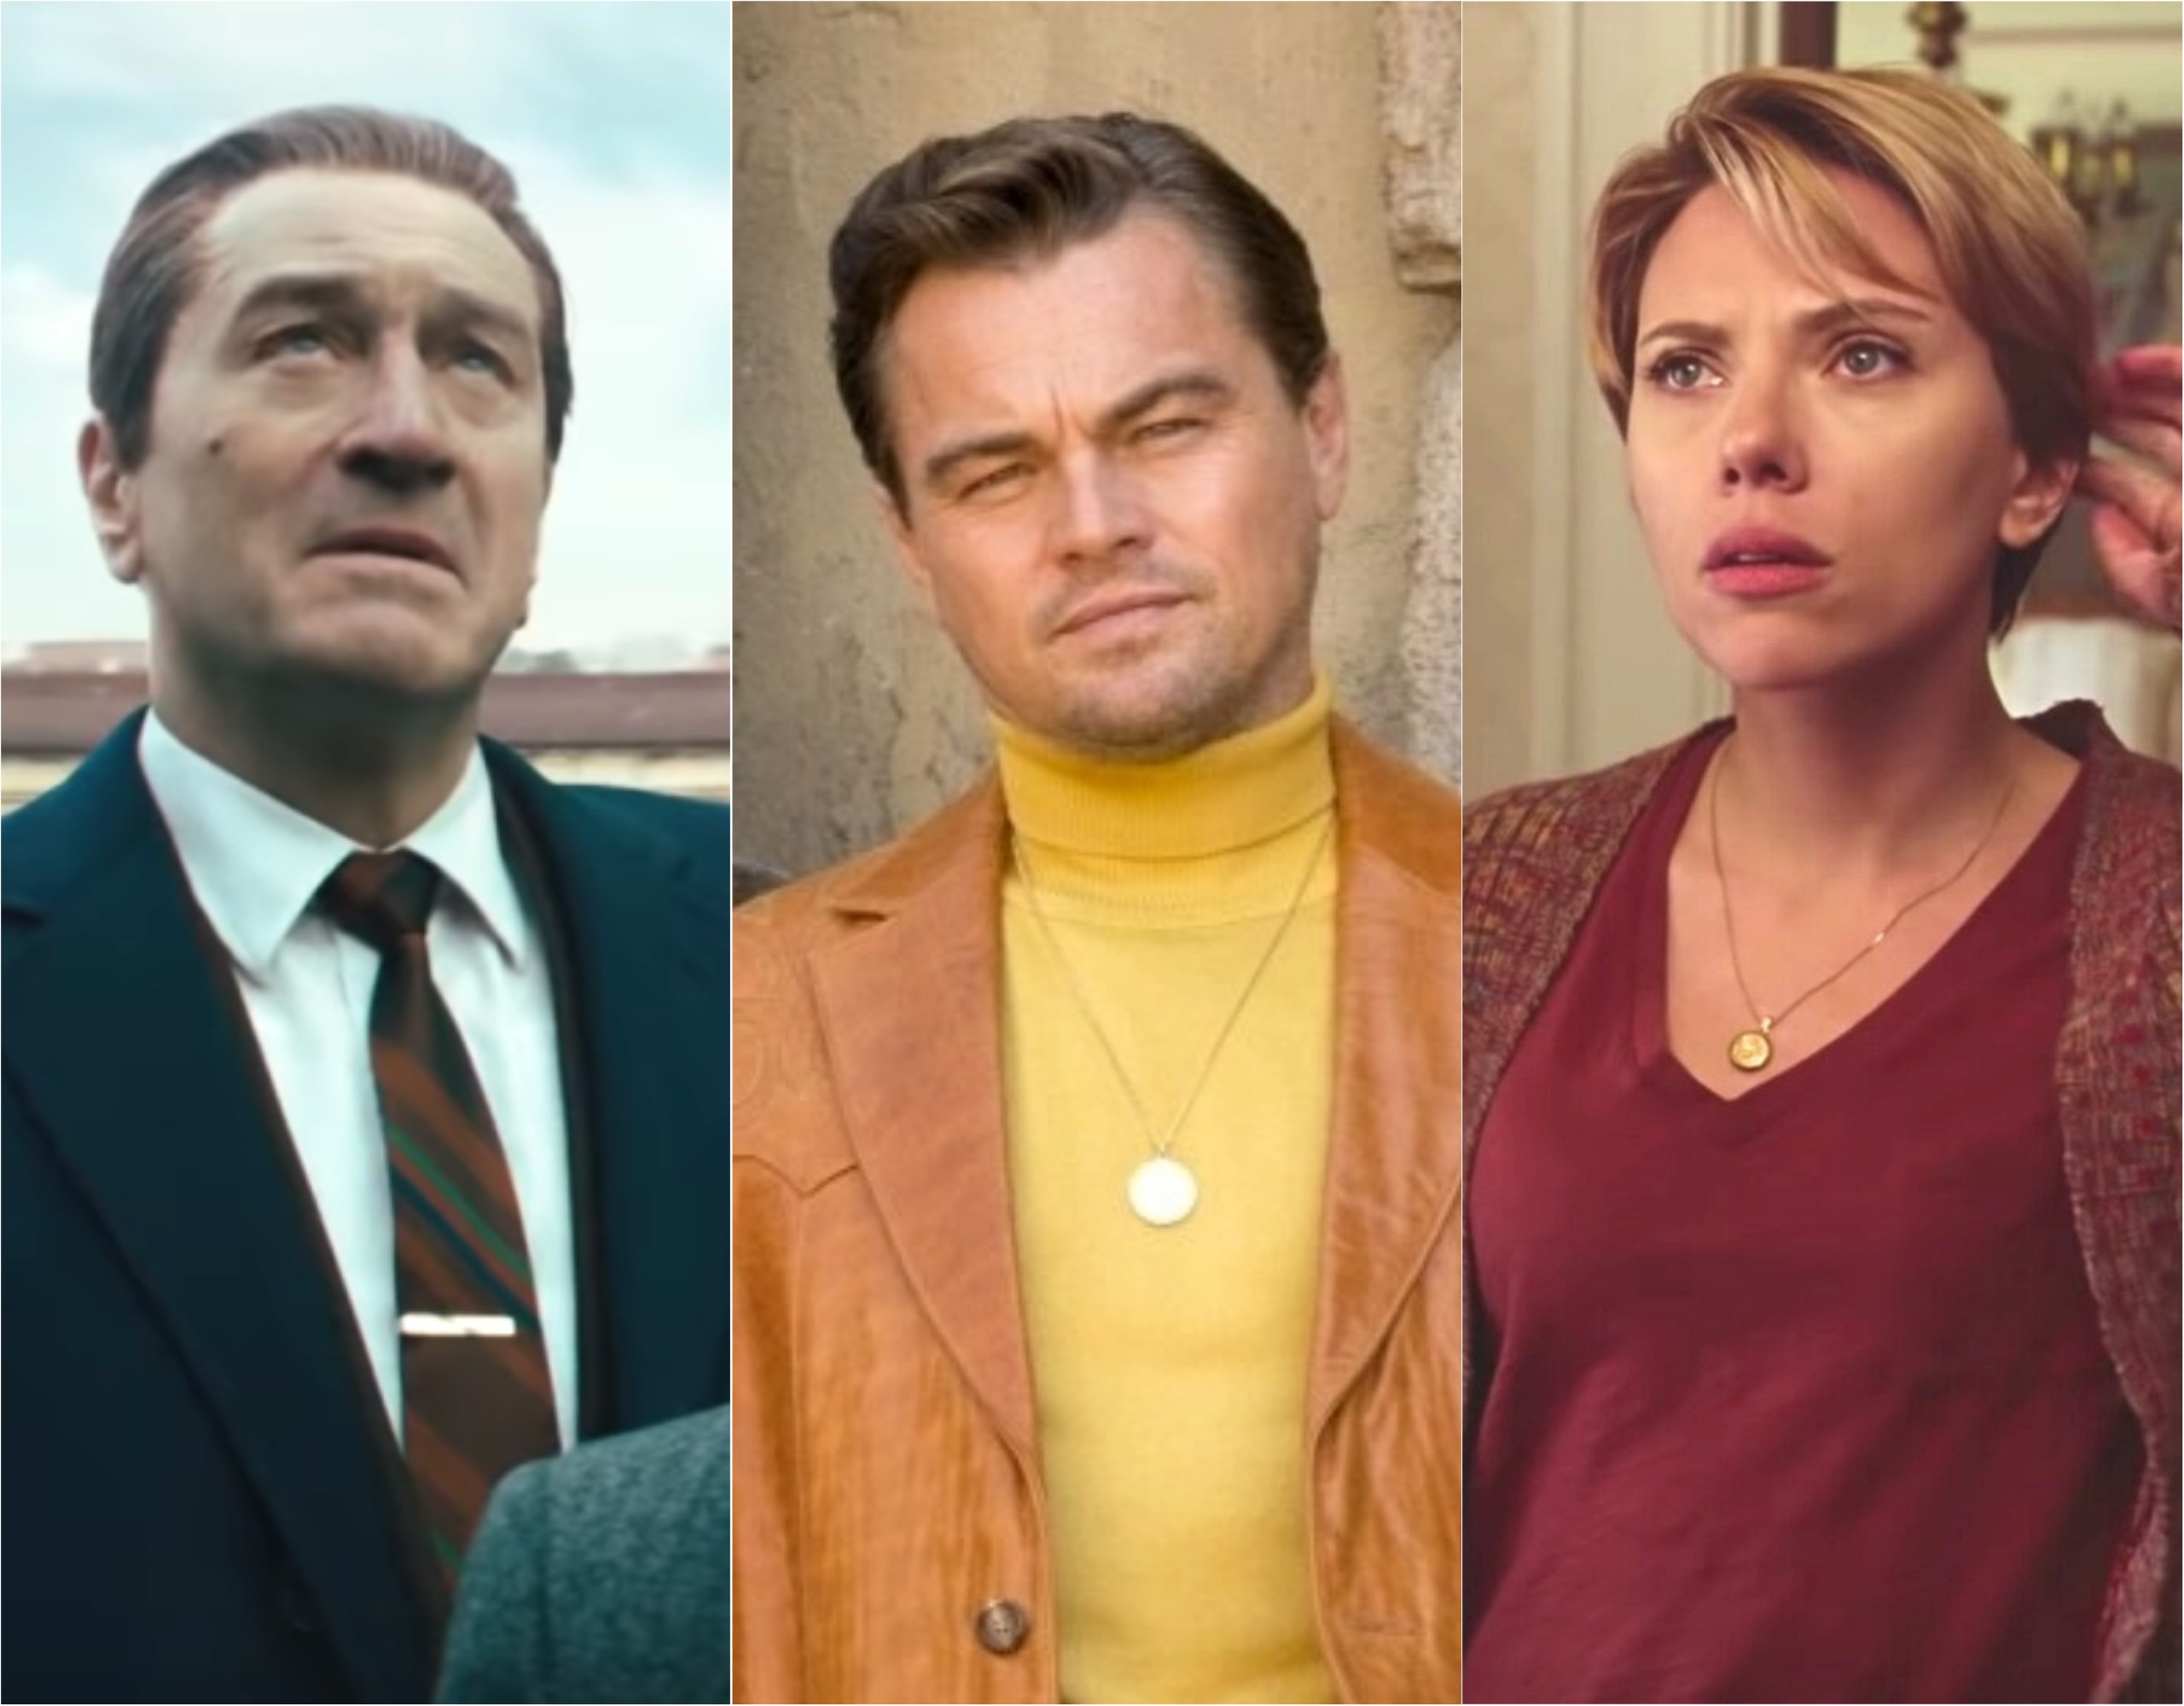 Robert De Niro em 'O Irlandês', Leonardo DiCaprio em 'Era uma vez em... Hollywood' e Scarlett Johansson em 'História de um Casamento' (Foto: Divulgação)